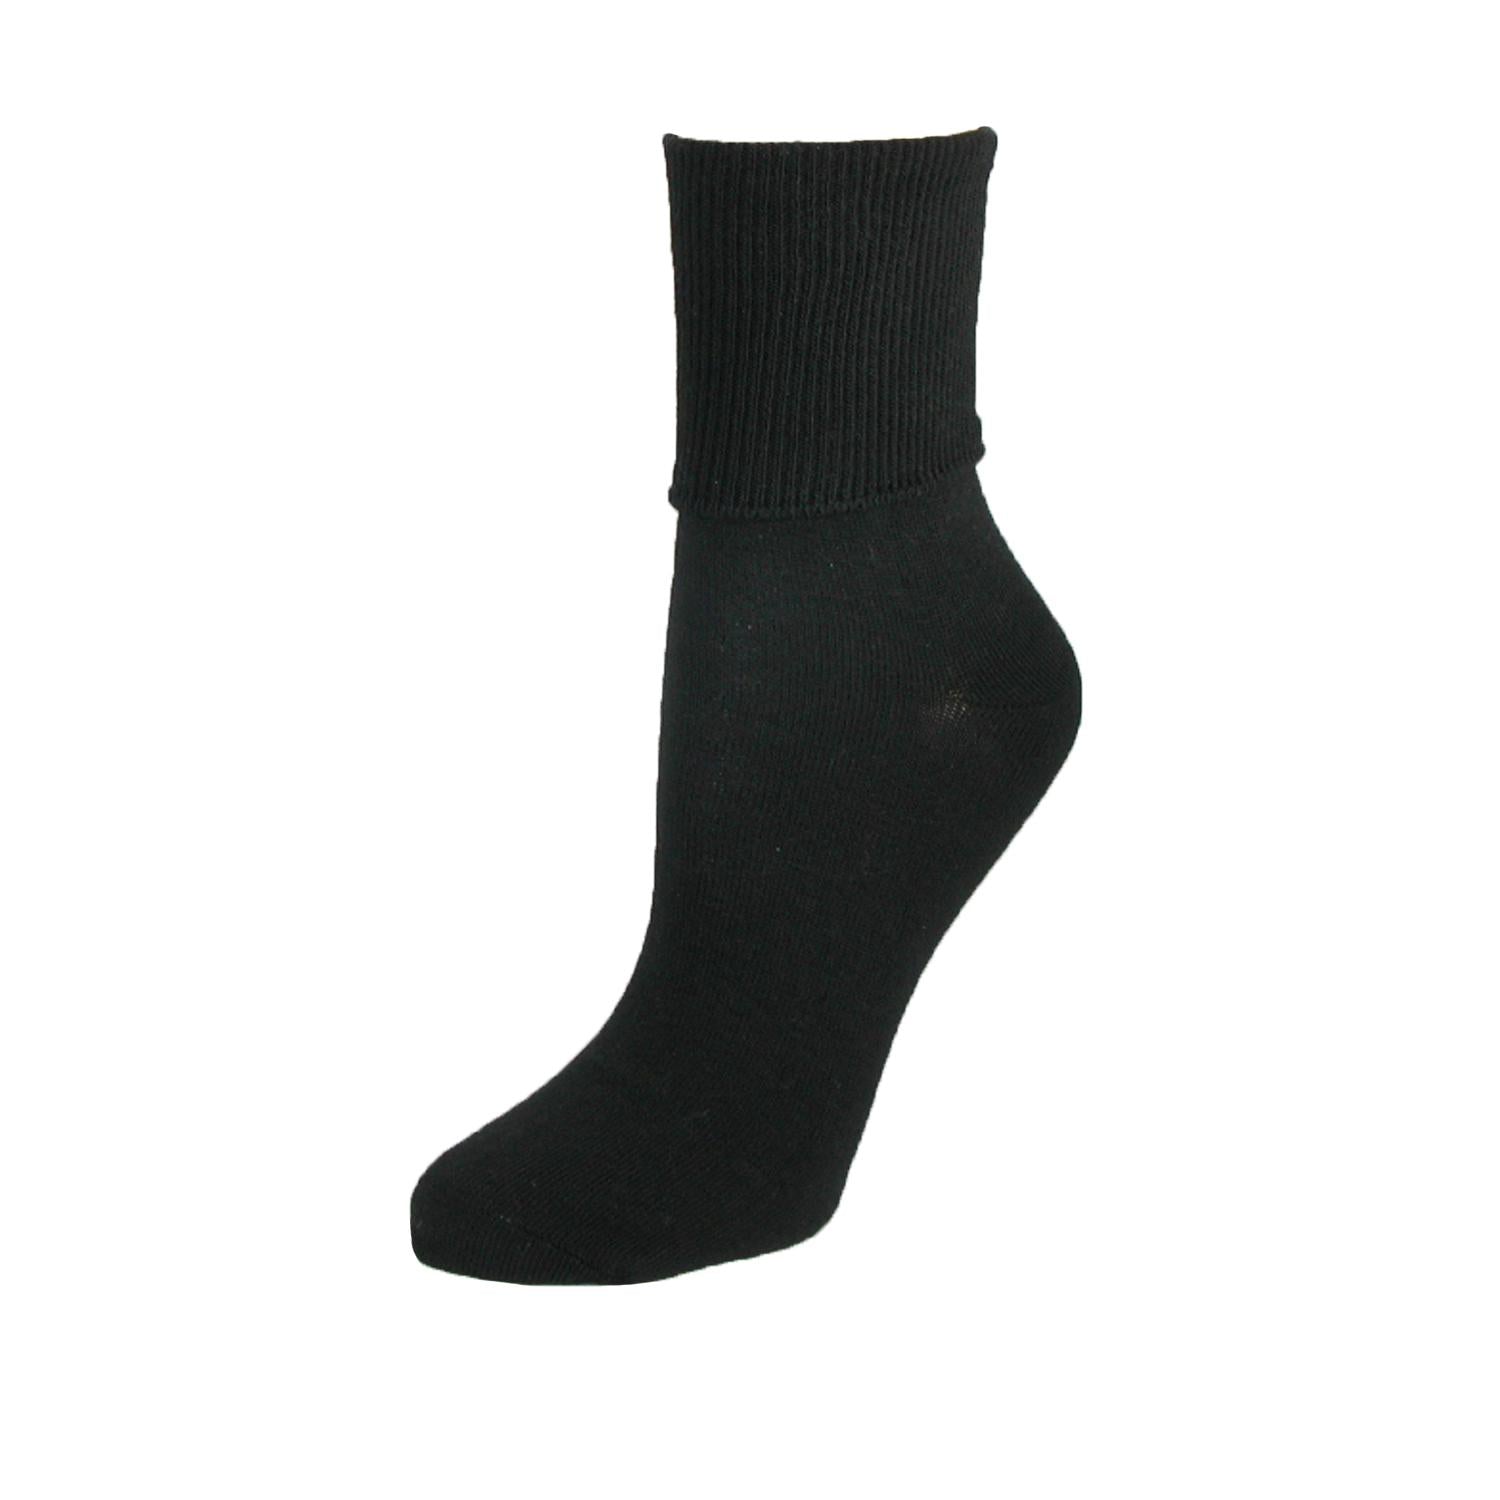 Women's Plus Size Cotton Turn Cuff Sock by Jefferies Socks